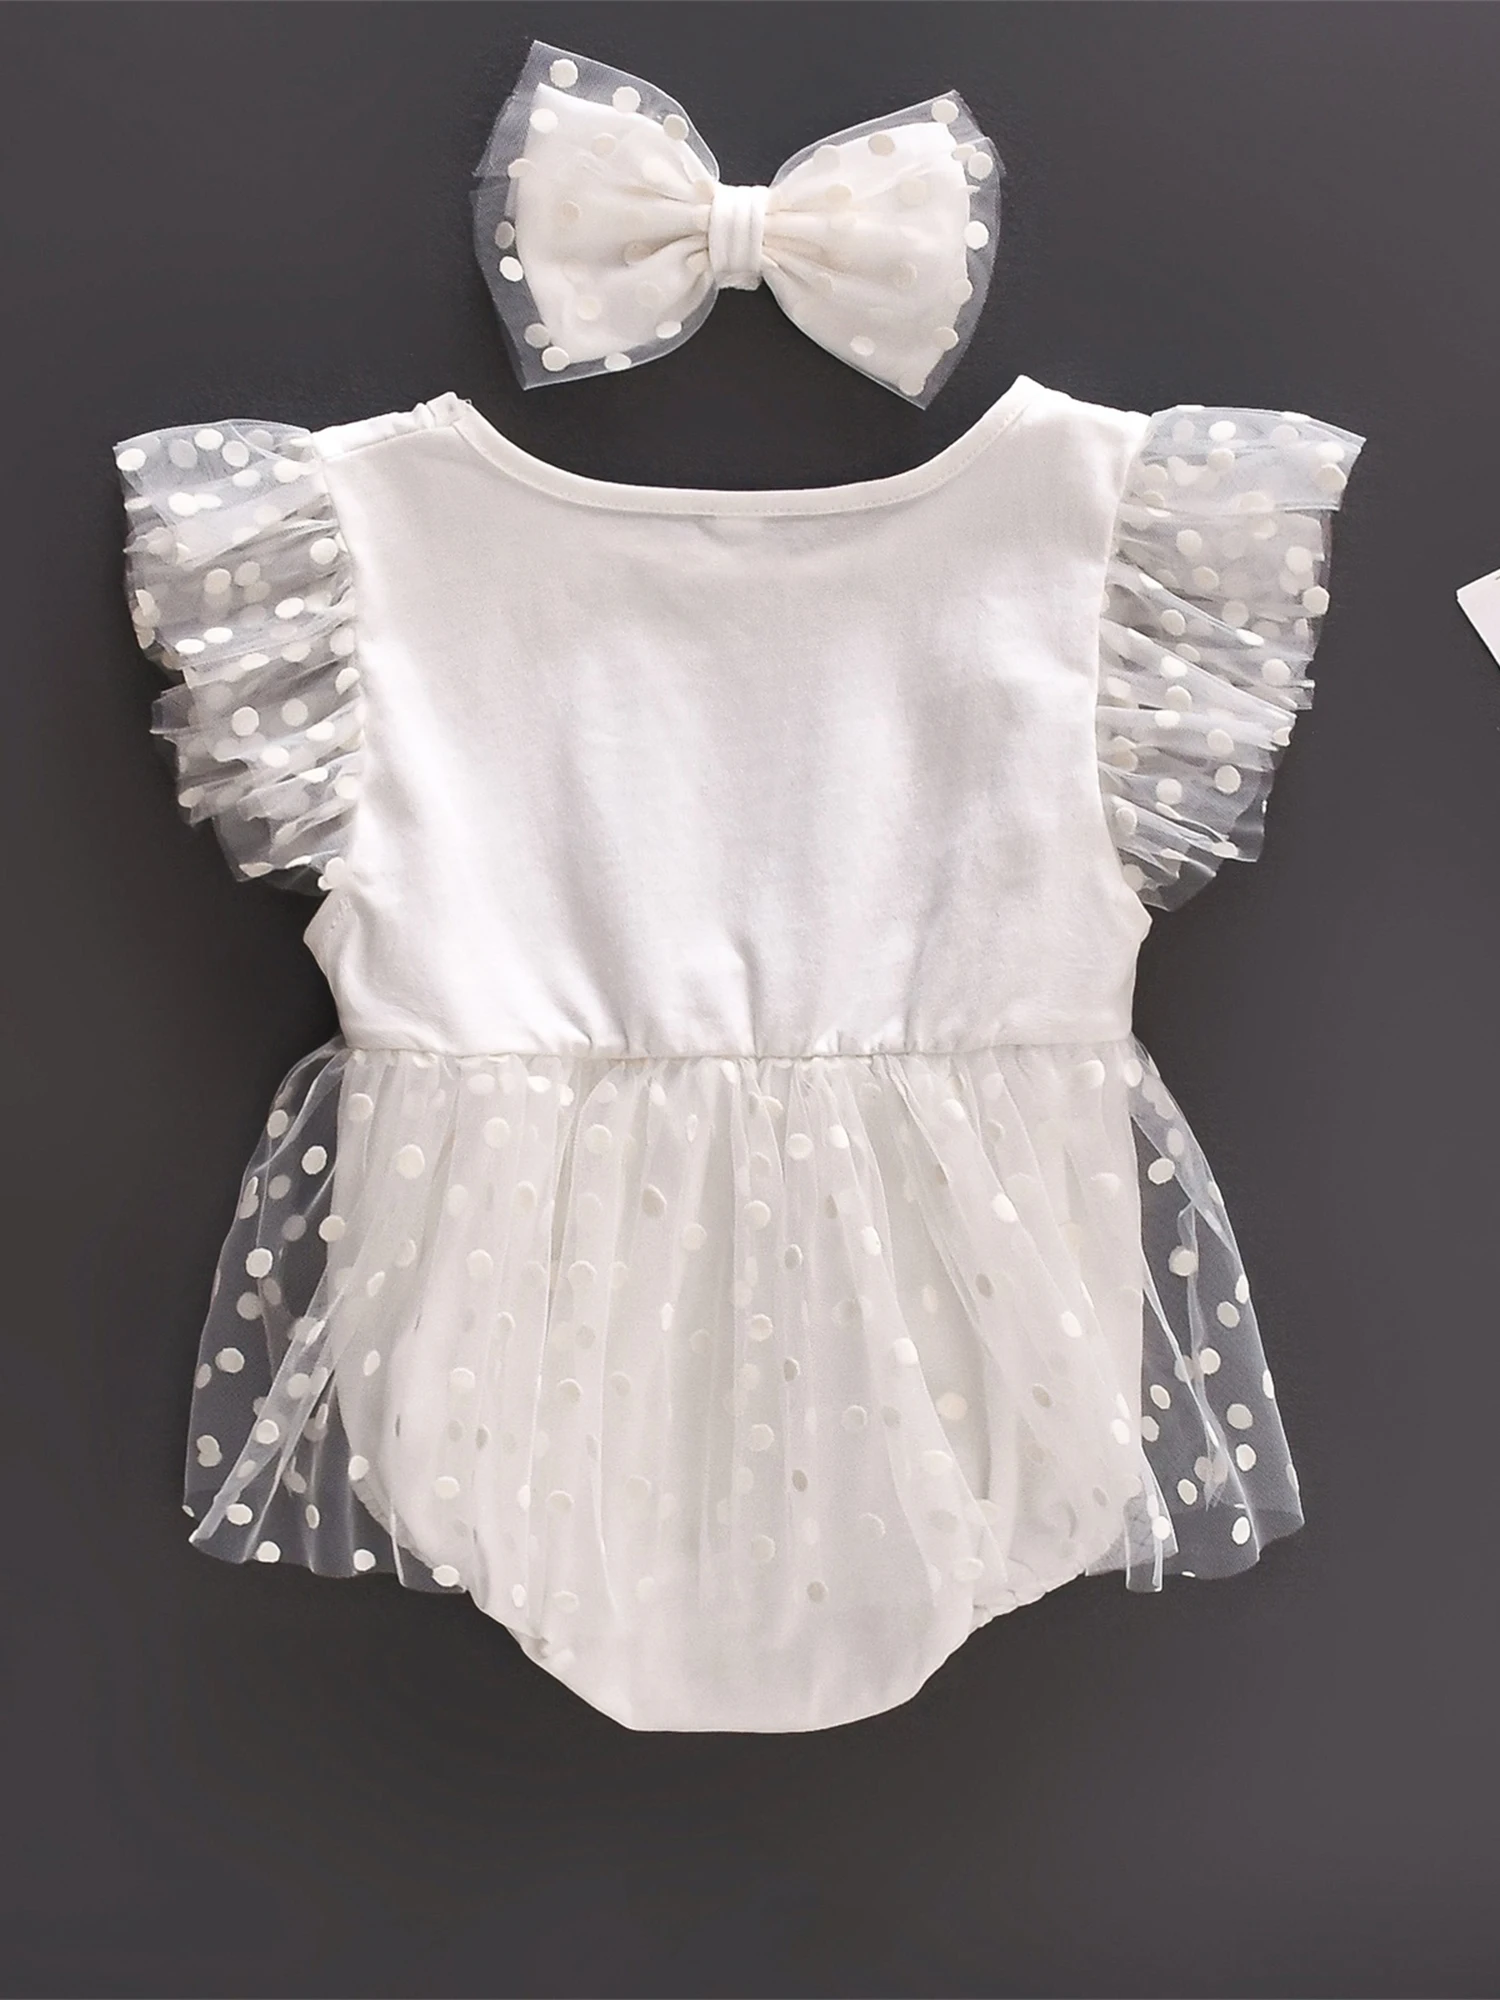 Очаровательное платье-комбинезон с принтом в горошек для новорожденных, фатиновое лоскутное шитье и повязка на голову с бантом для летних нарядов для маленьких девочек